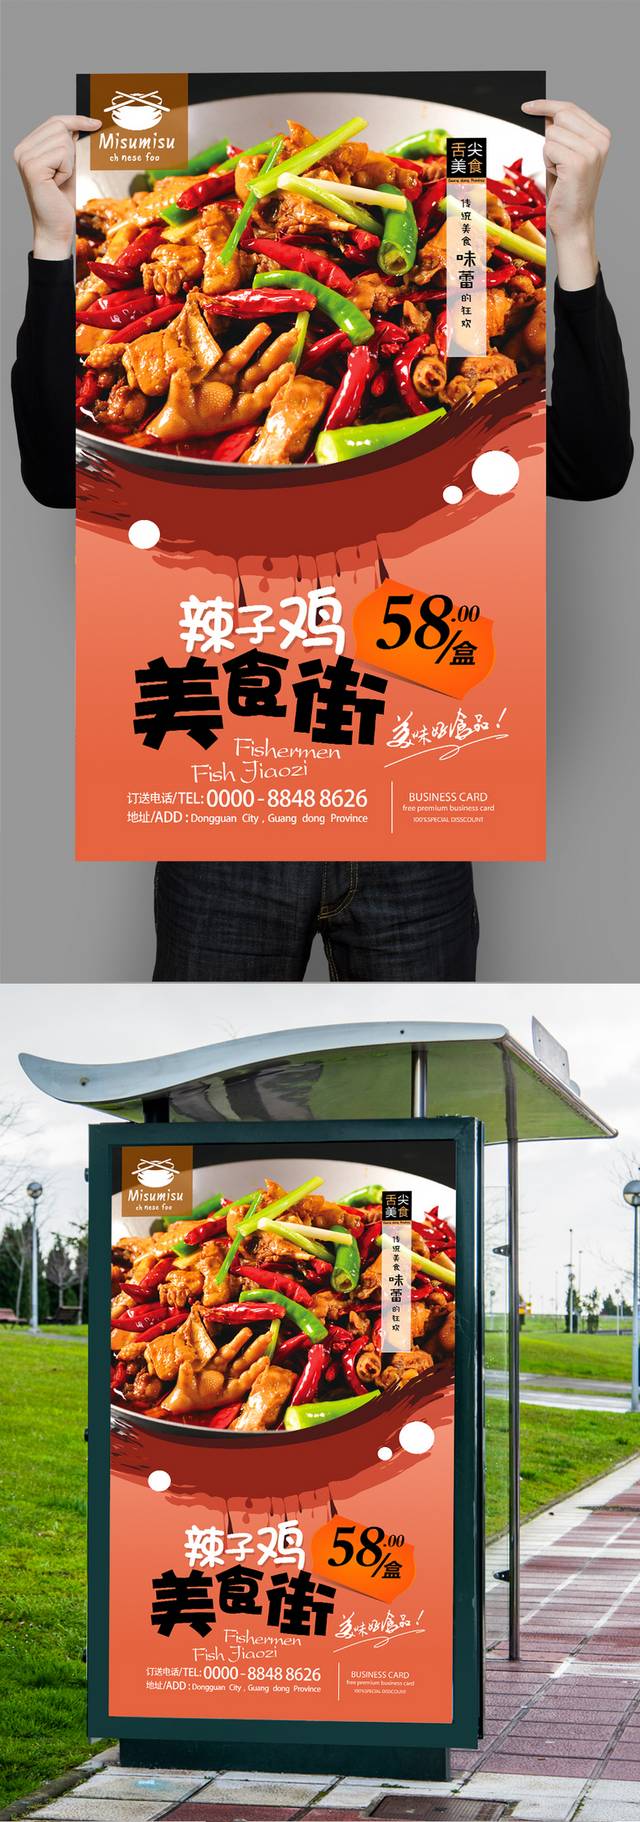 高清辣子鸡宣传海报设计